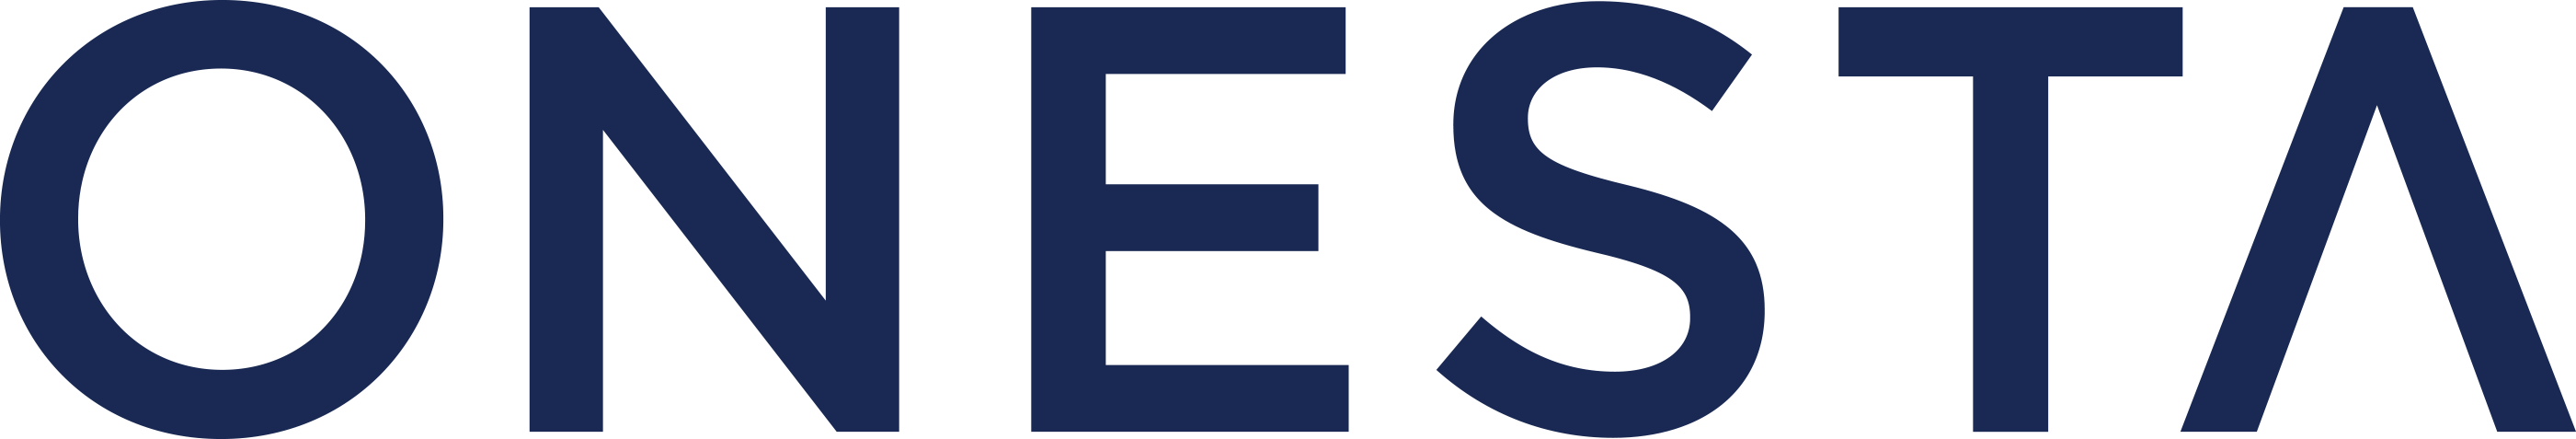 SP logo Catedra ONESTA